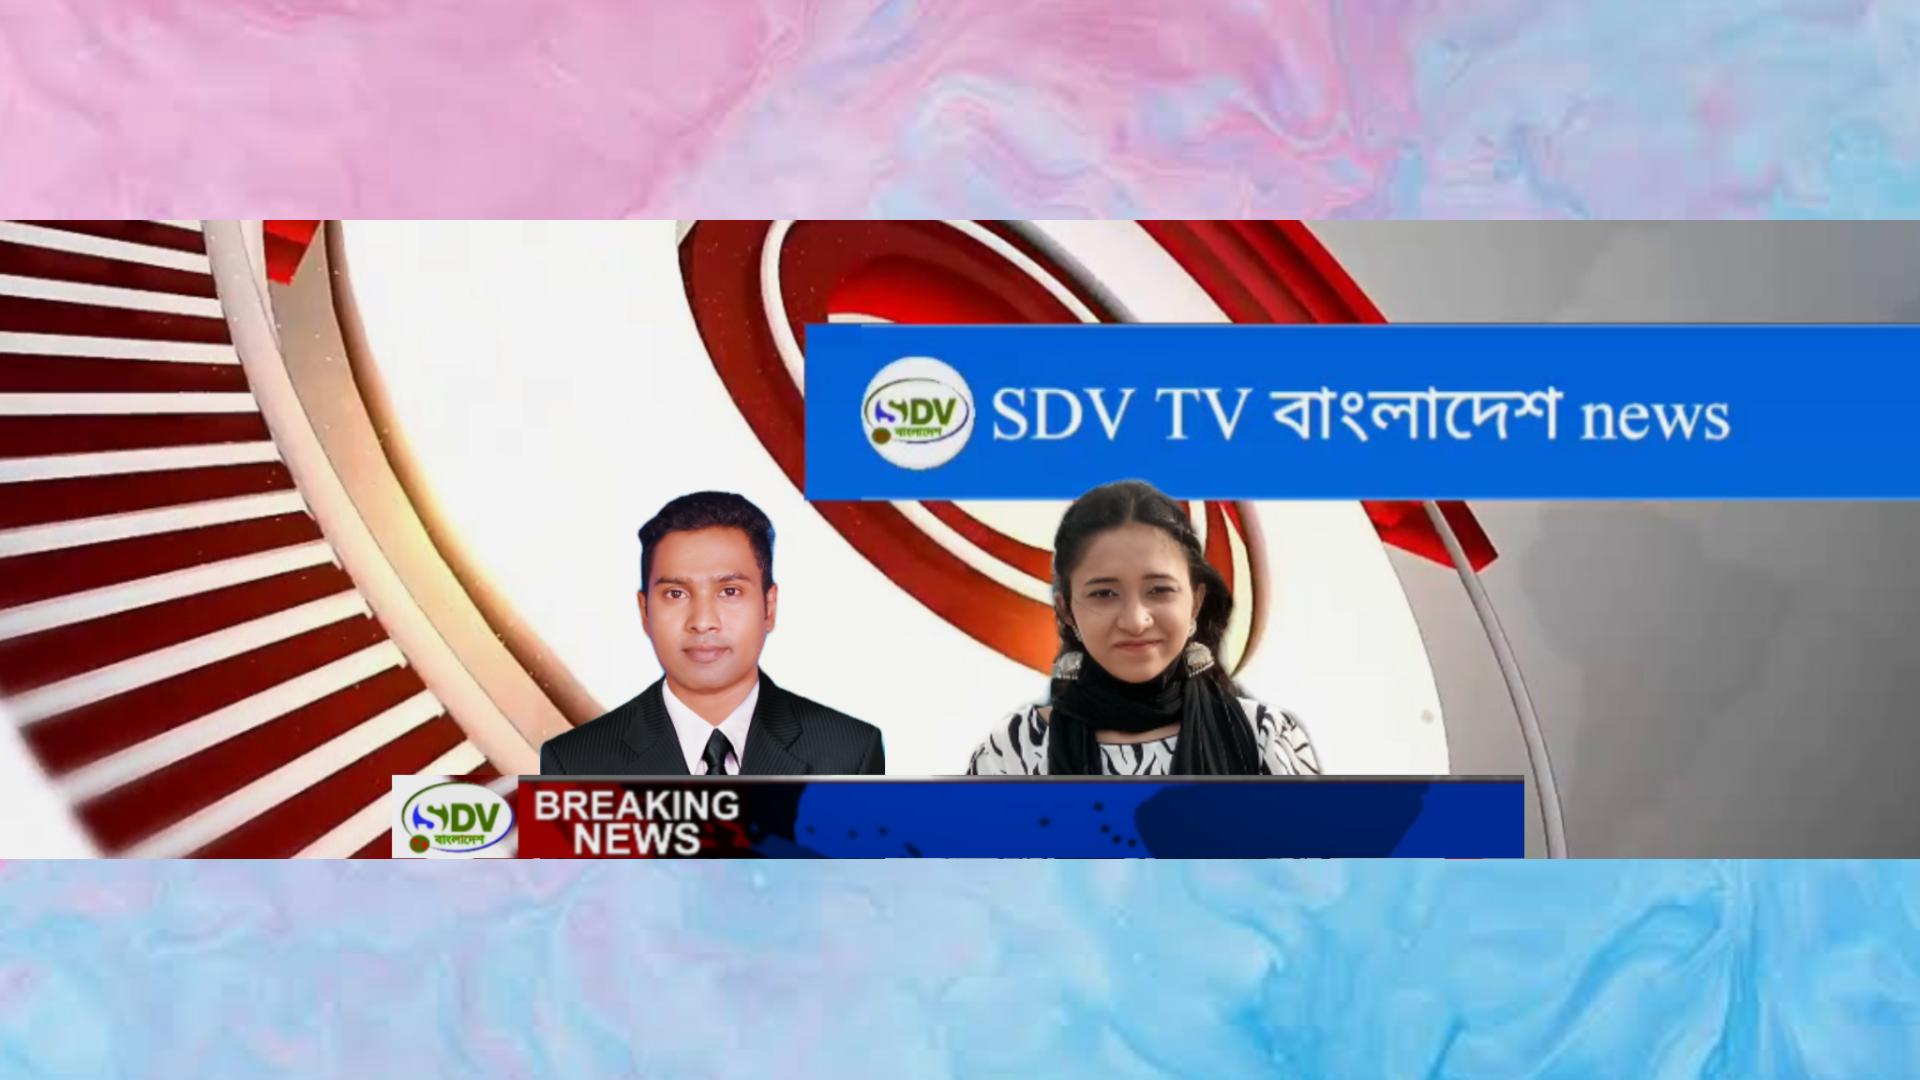 SDV TV বাংলাদেশ news